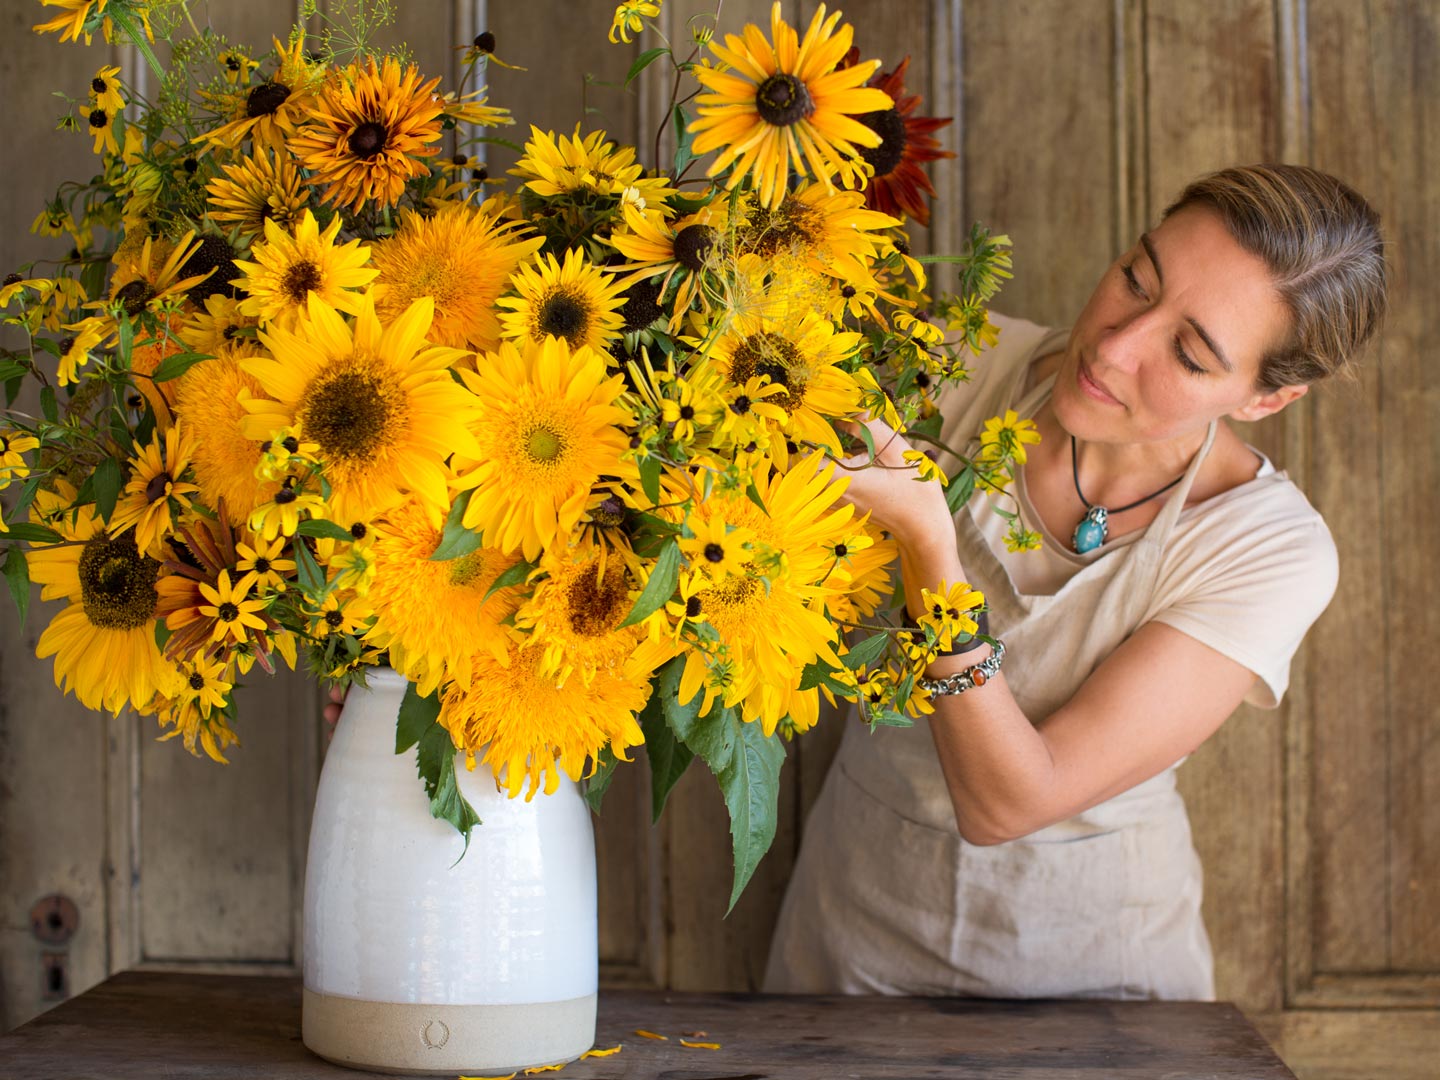 Erin Benzakein arranging sunflowers